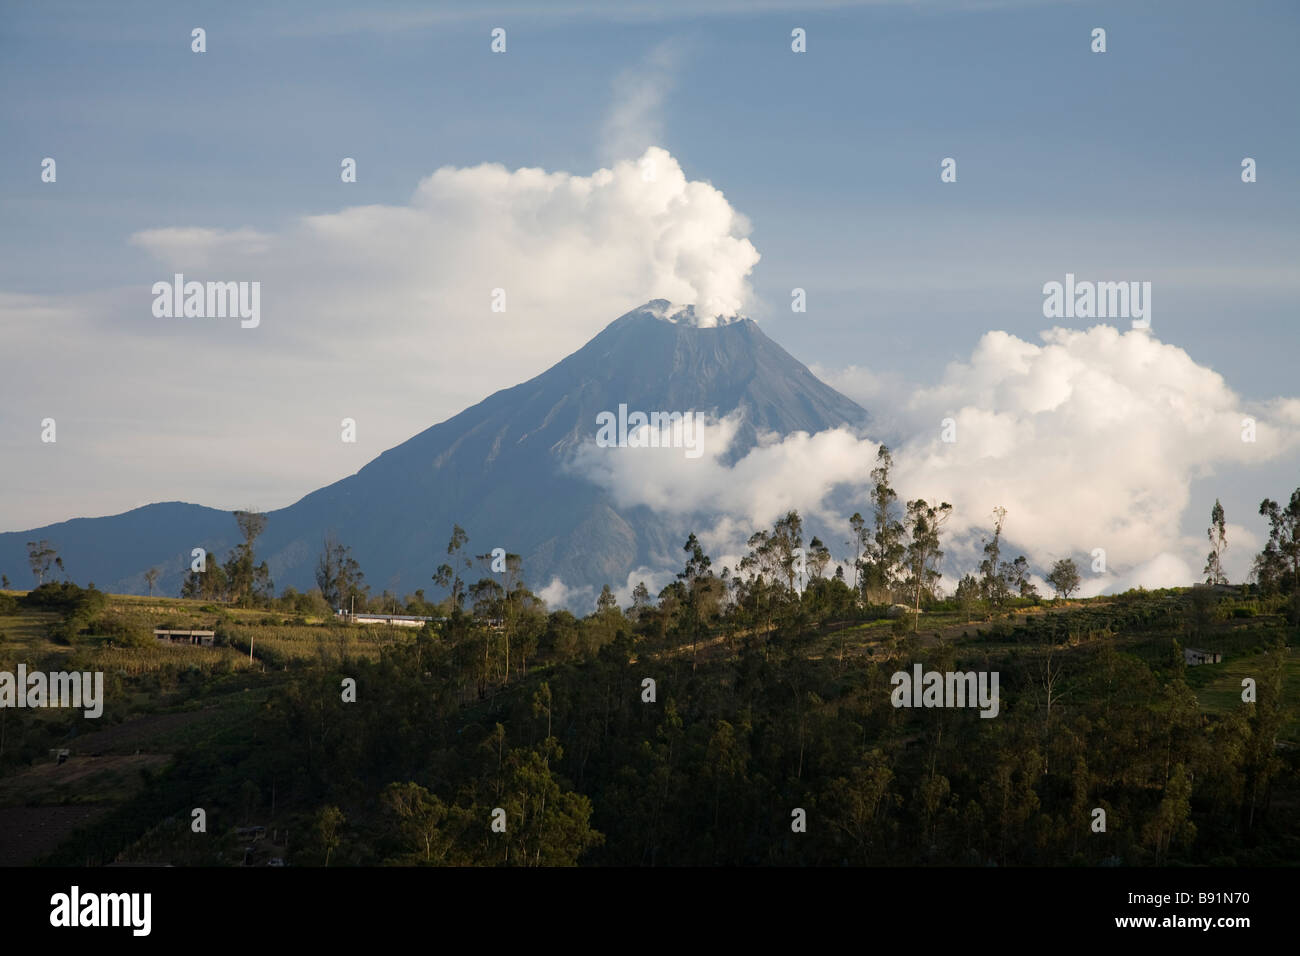 Volcano Tungurahua, Banos district, Ecuador Stock Photo